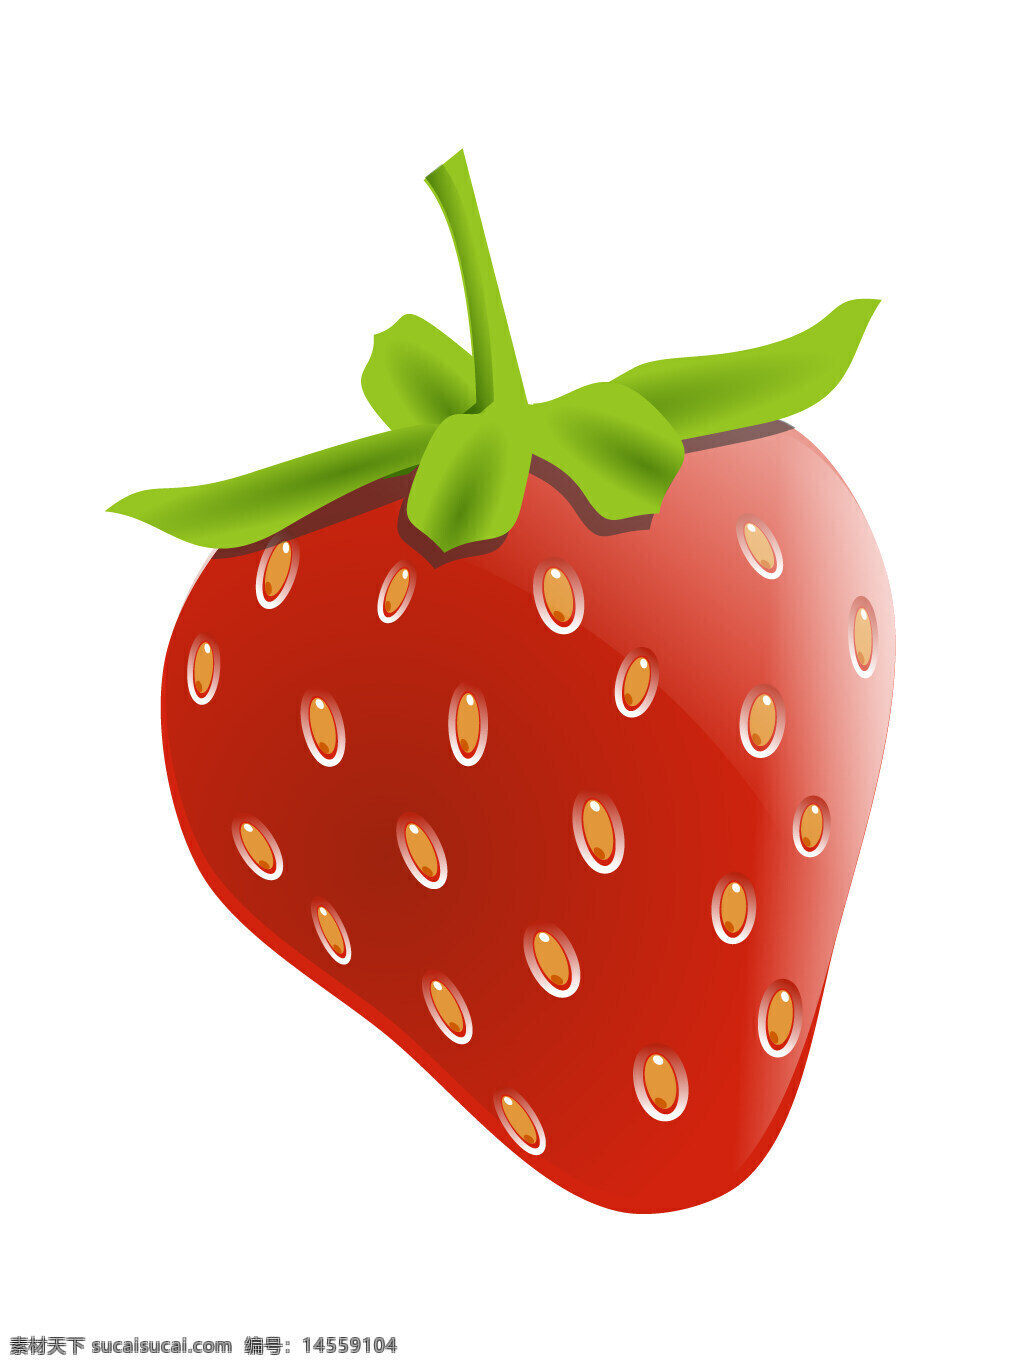 草莓 浆果 水果 瓜果 食物 手绘水果 矢量水果 手绘素材 矢量素材 新鲜水果 植物